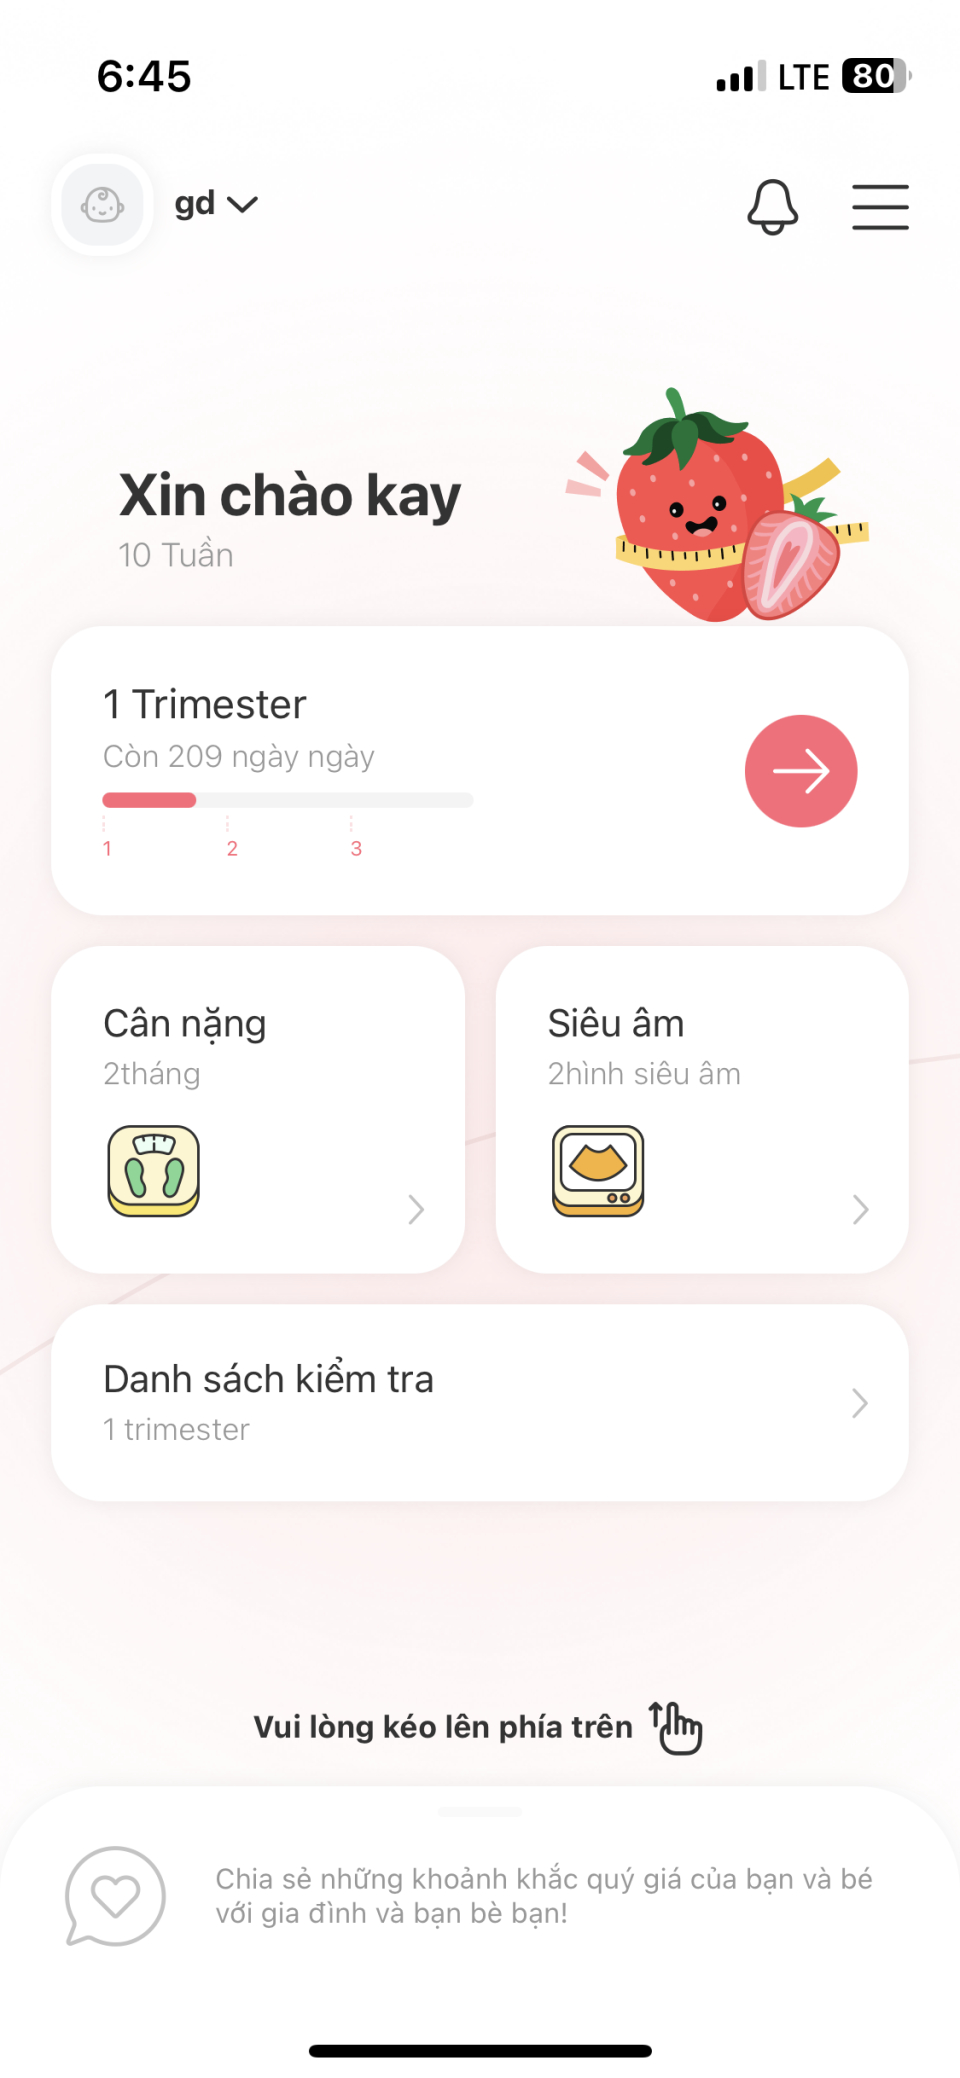 마미톡 베트남 서비스 화면(사진=랩지노믹스)